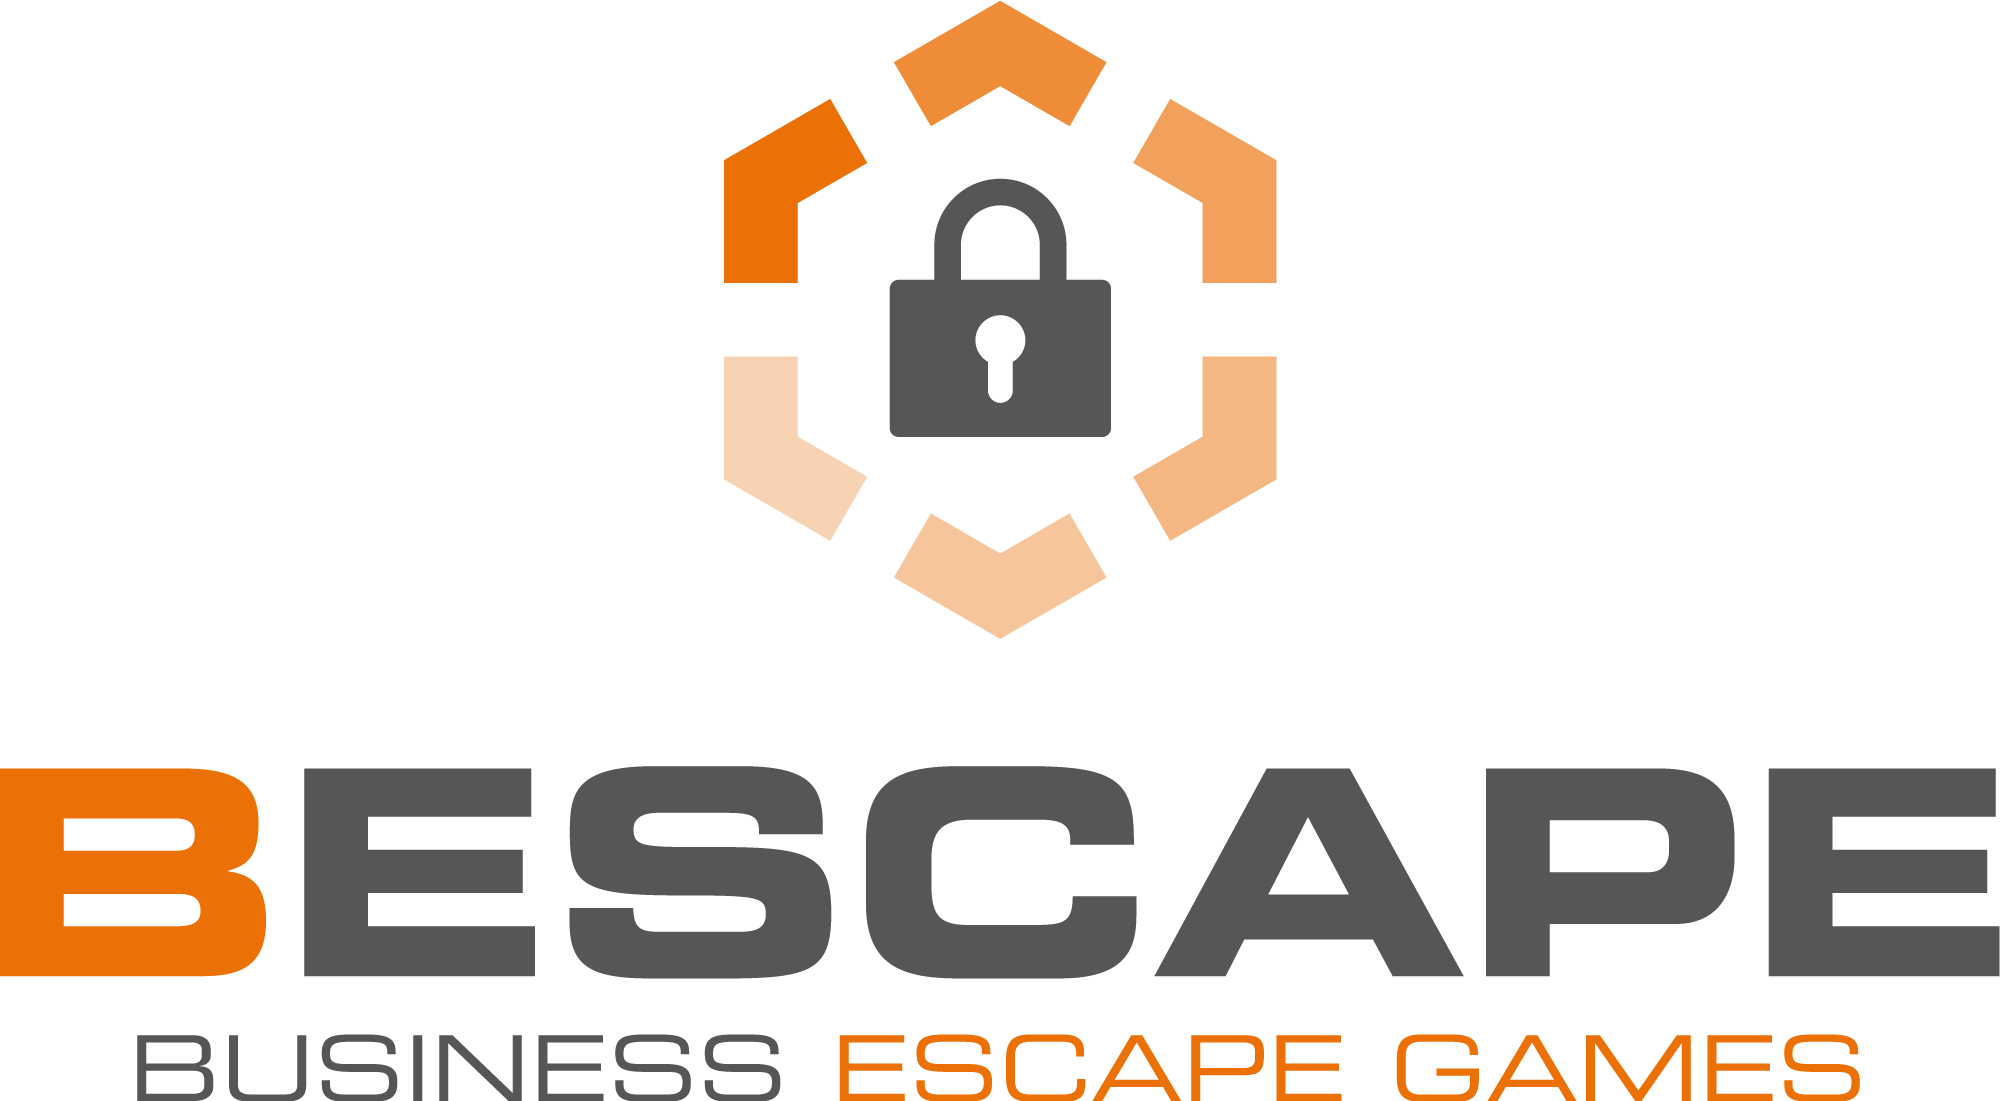 Business Escape Games